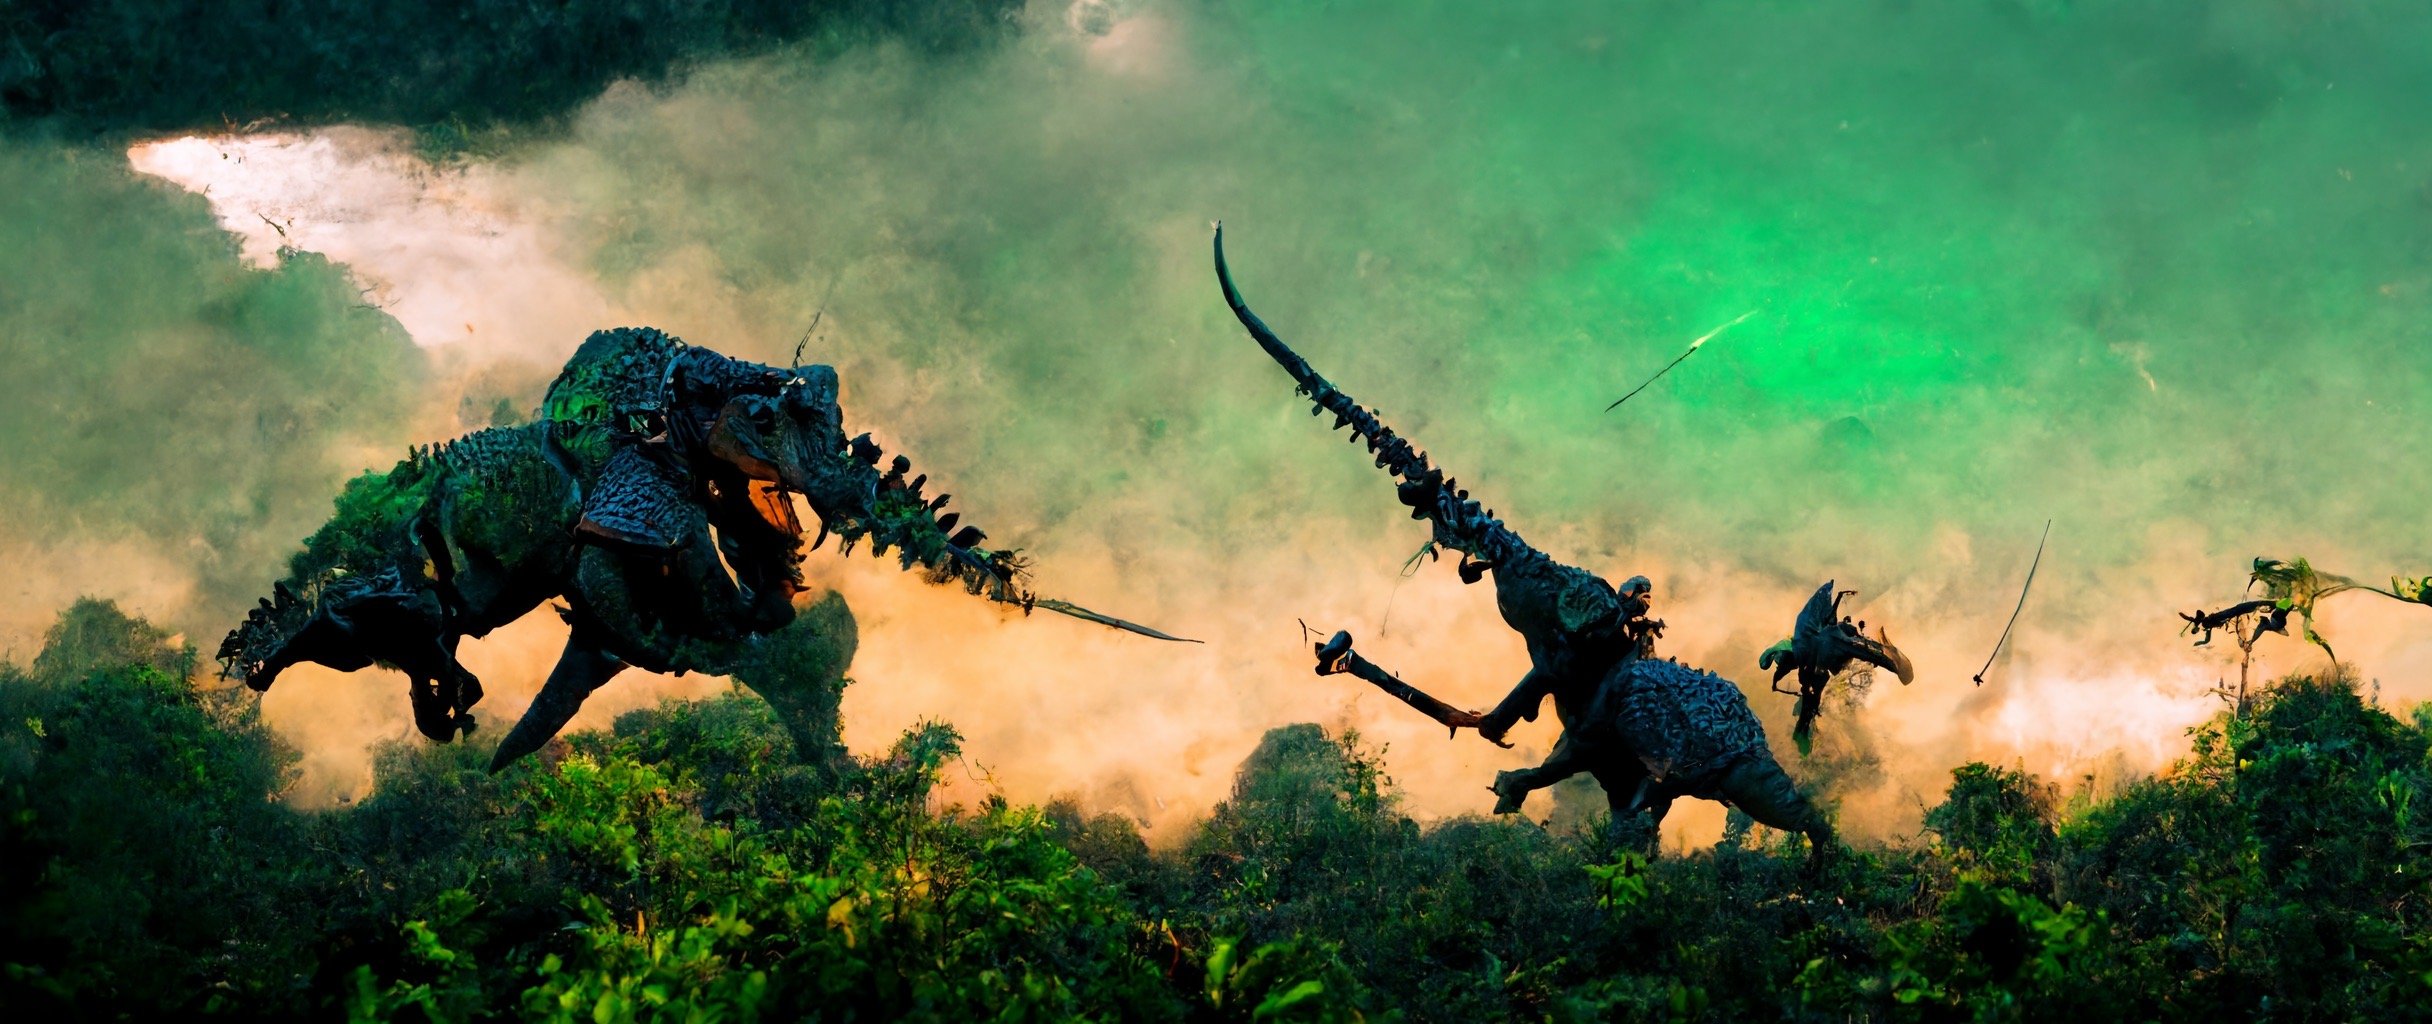 f12363c9-5bd0-42cb-b7b5-b277520d0f63_S3RAPH_Dino_with_armor_and_detailed_weapons_in_epic_fight_scene._in_green_prehistoric_jungle._Epic_sky._Cin.JPG